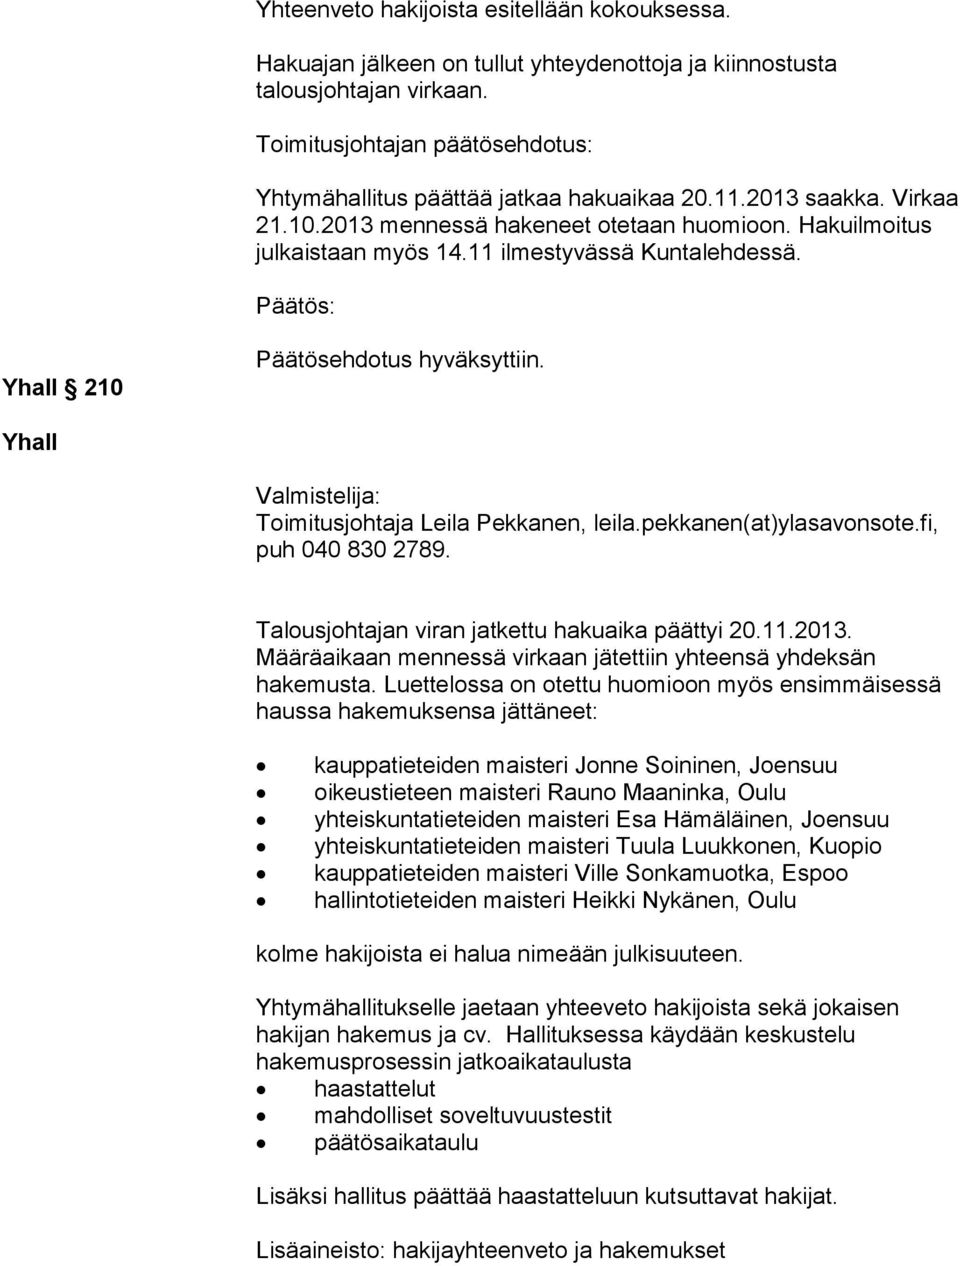 11 ilmestyvässä Kuntalehdessä. Yhall 210 Päätösehdotus hyväksyttiin. Yhall Valmistelija: Toimitusjohtaja Leila Pekkanen, leila.pekkanen(at)ylasavonsote.fi, puh 040 830 2789.